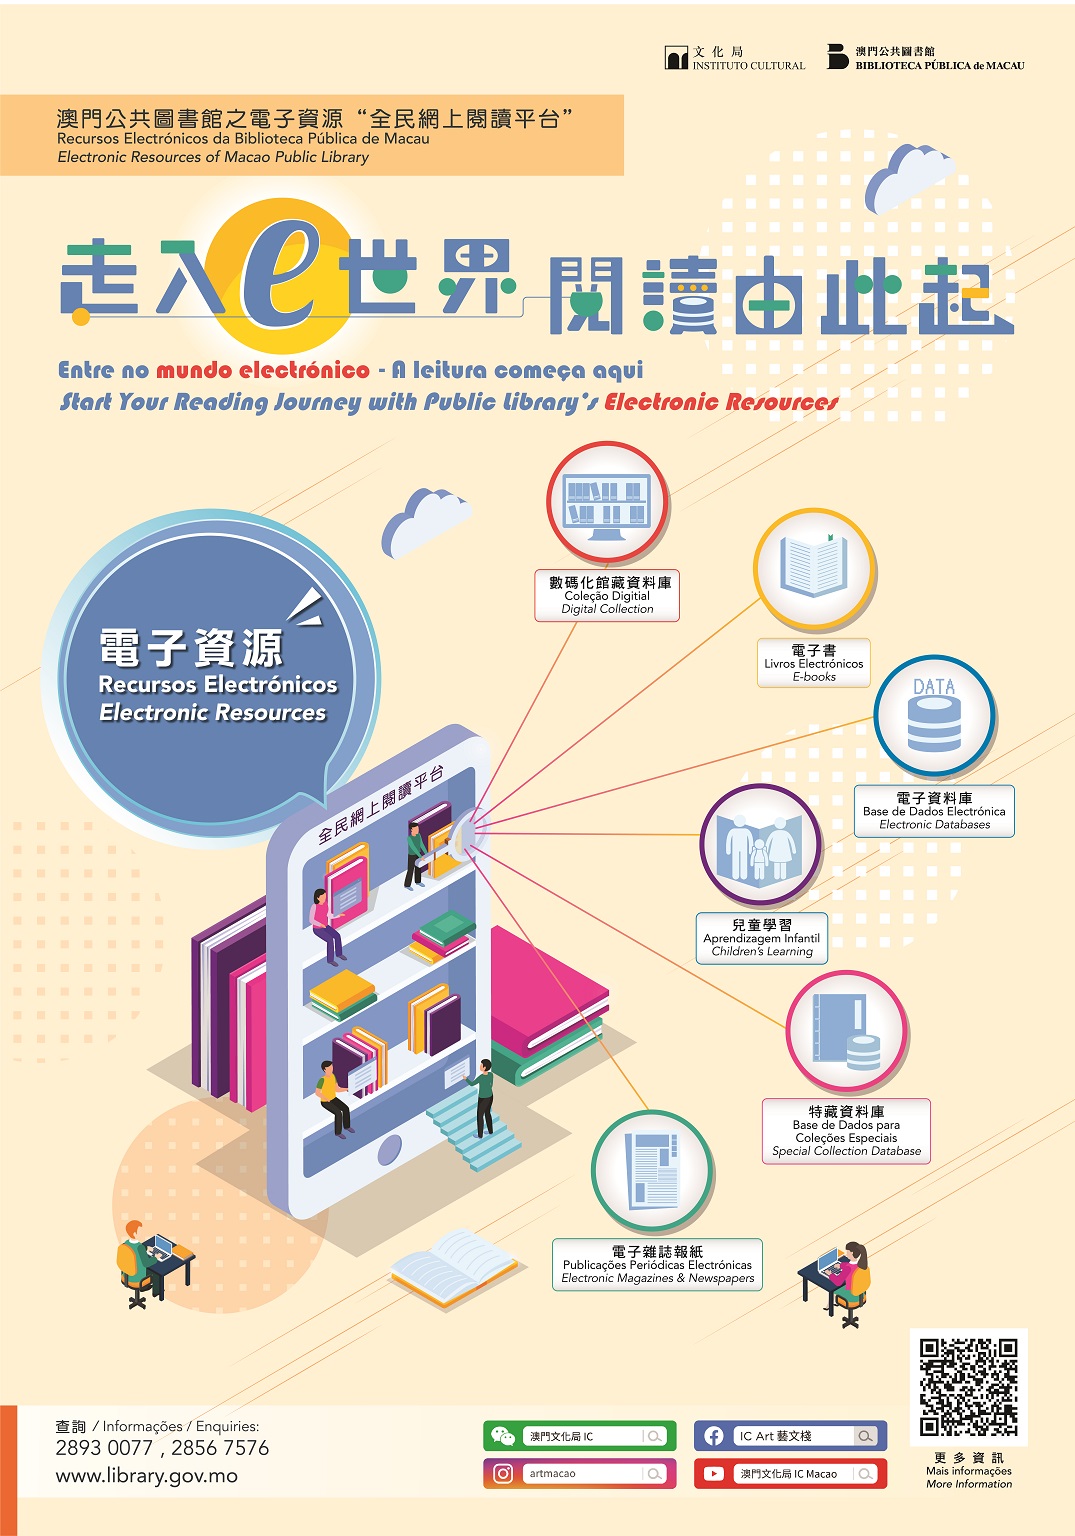 Recursos Electrónicos da Biblioteca Pública de Macau